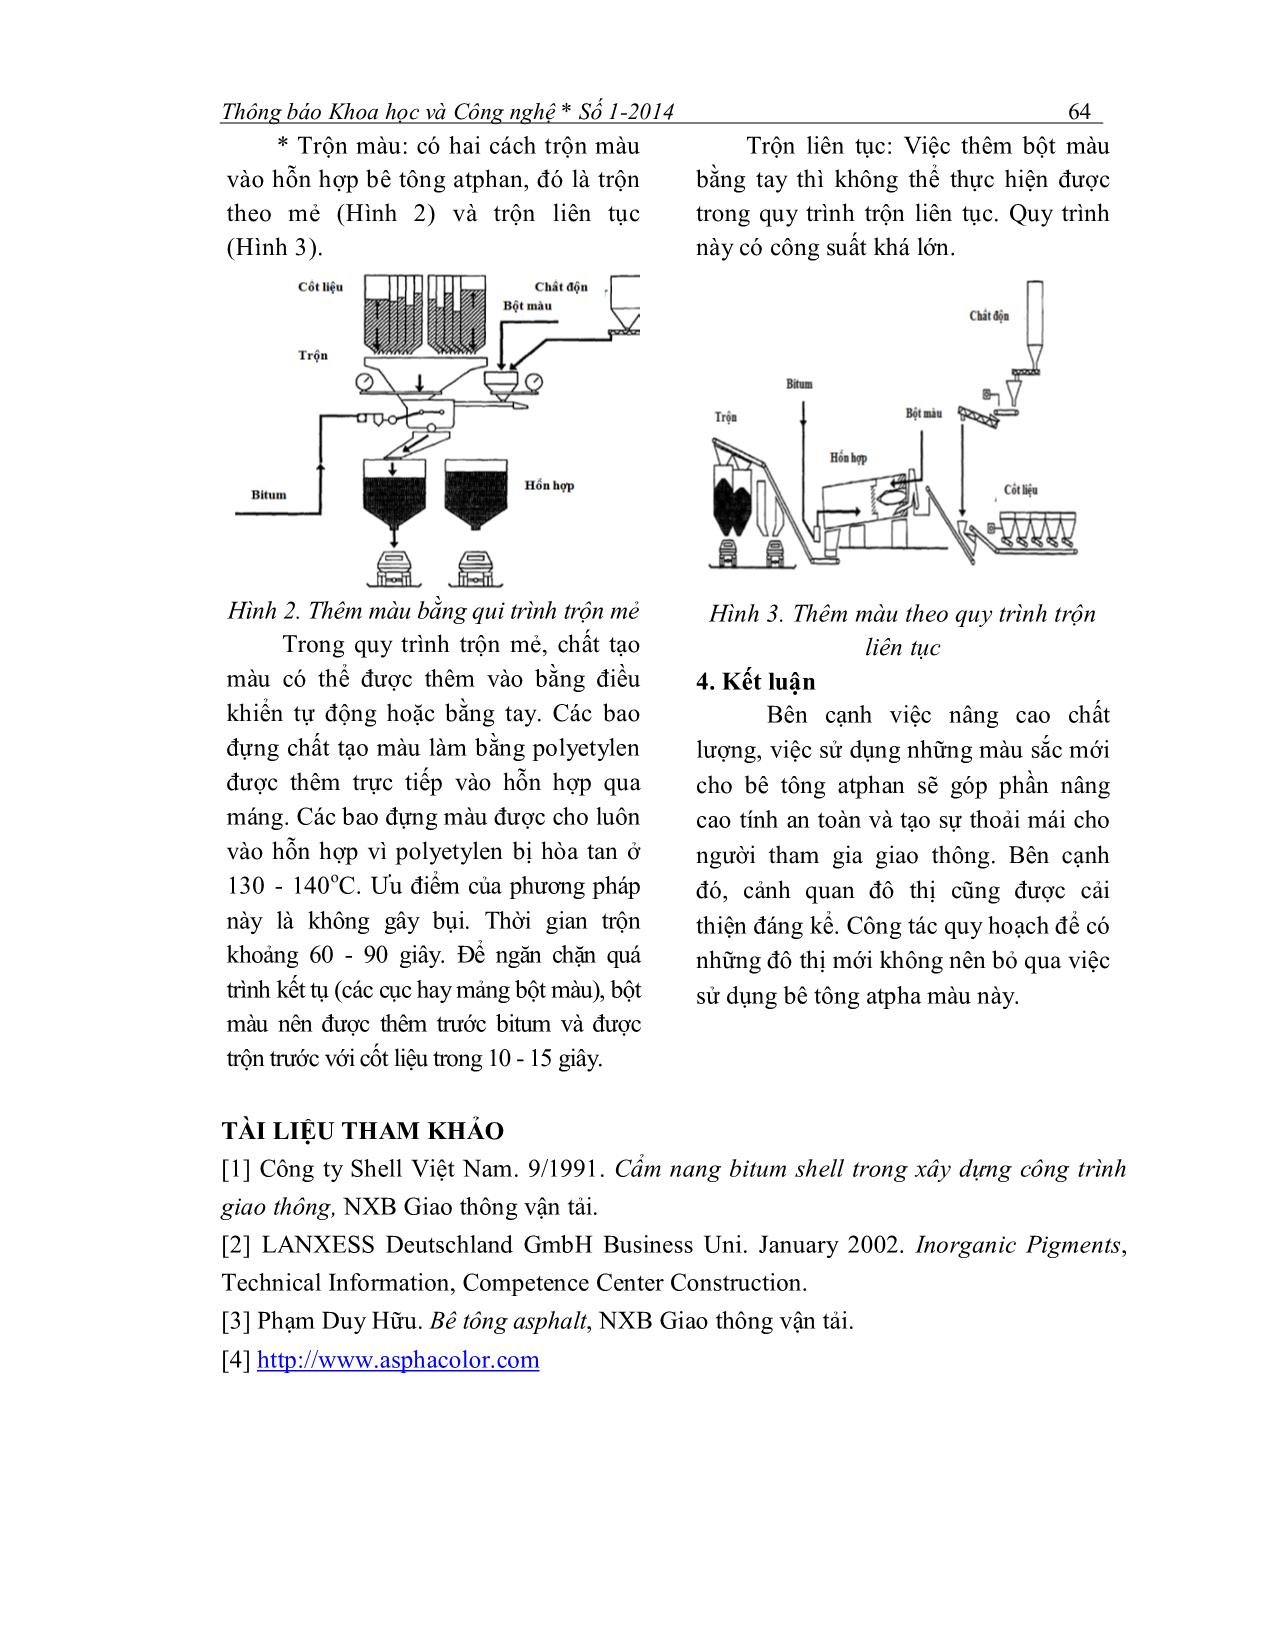 Bê tông atphan màu và các phương pháp chế tạo trang 4